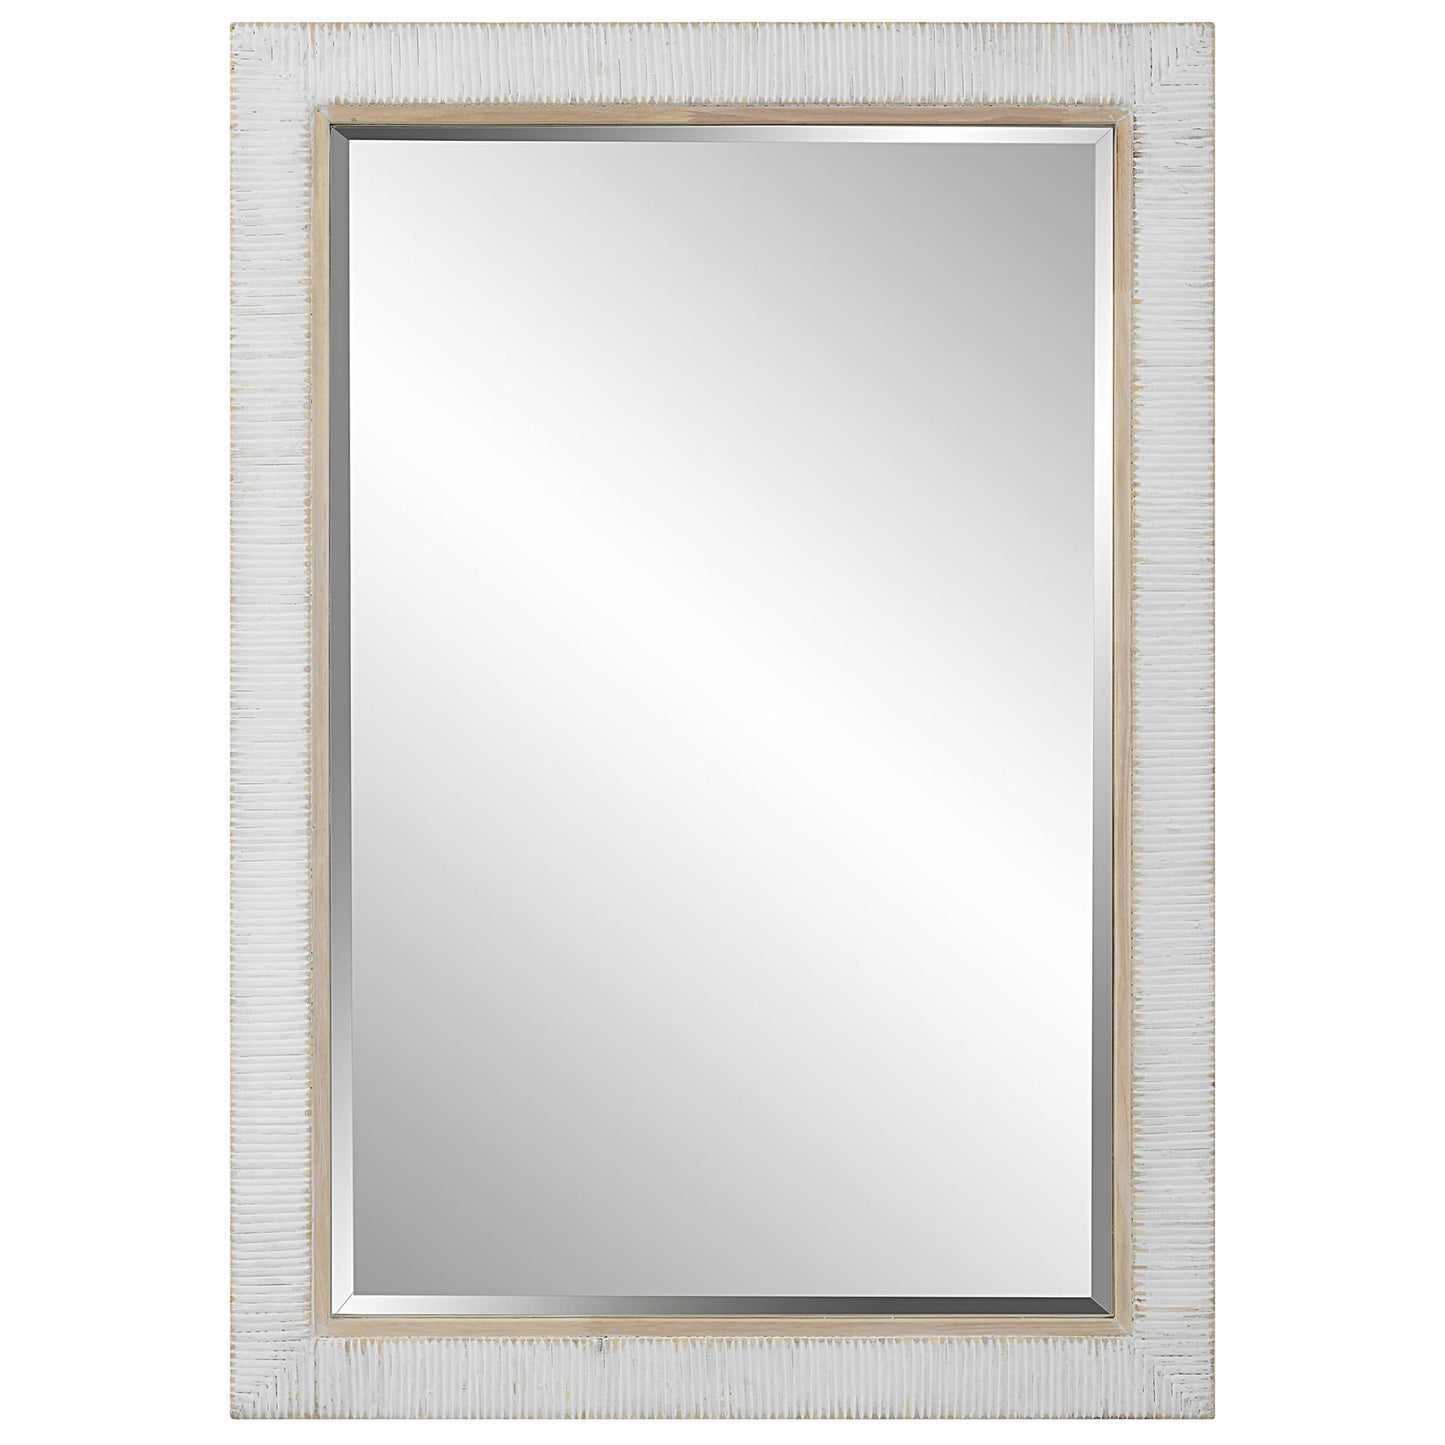 Coastal whitewash rectangle mirror